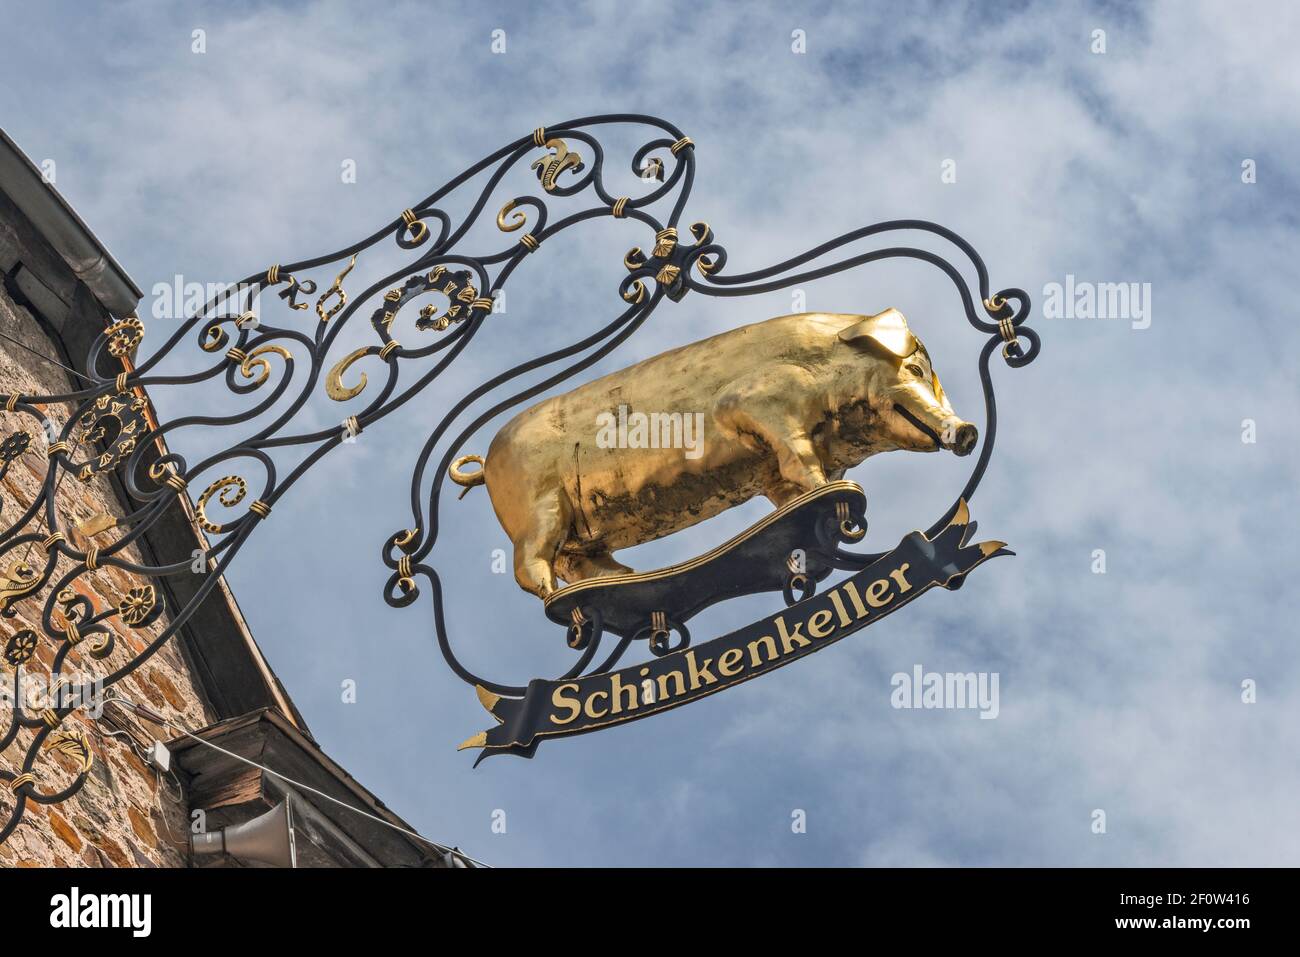 Panneau au restaurant Schinkenkeller à Senheim, municipalité de Cochem, vallée de la Moselle, Rhénanie-Palatinat, Allemagne Banque D'Images